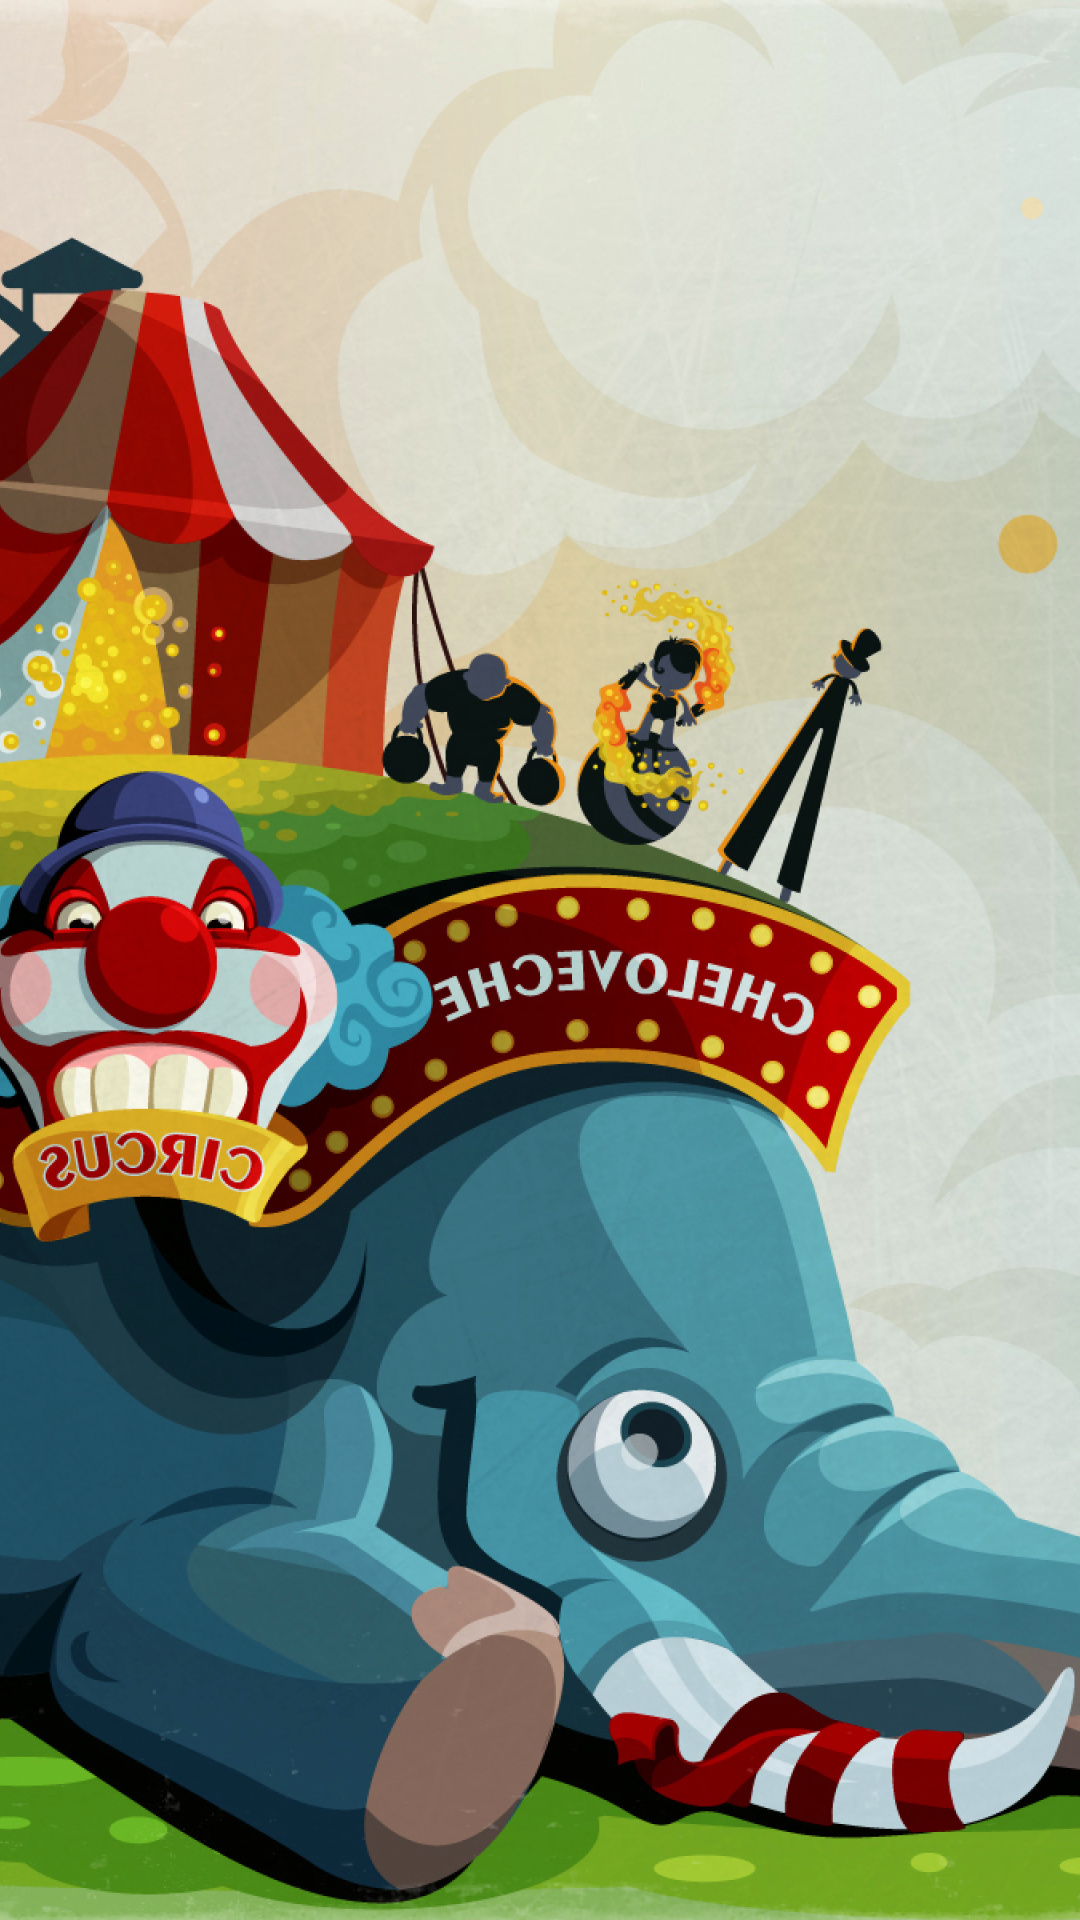 Обои Circus with Elephant 1080x1920